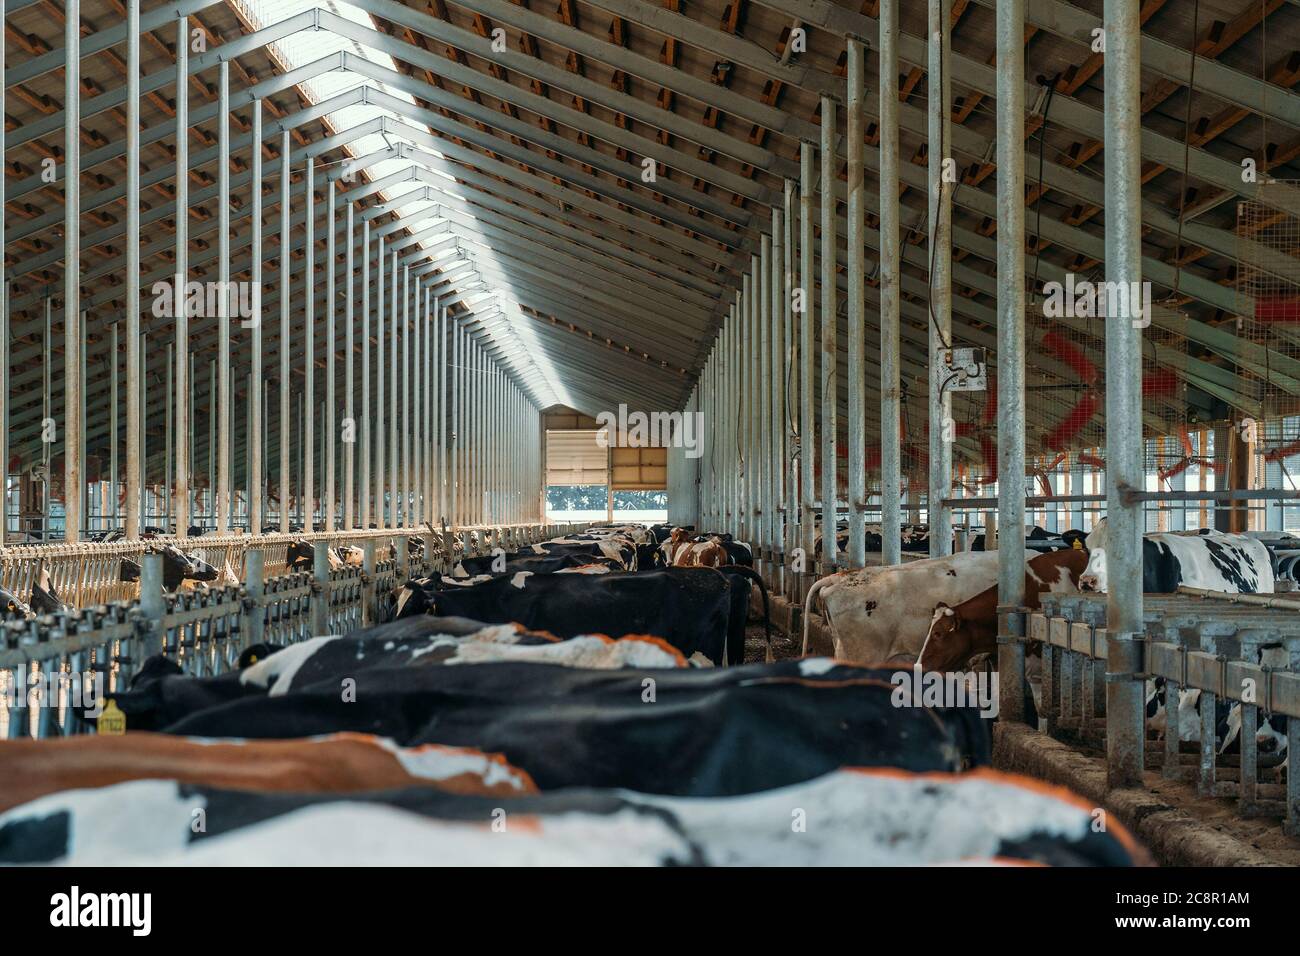 Vaches de traite à la ferme. Vaches laitières dans un bar moderne dans le cowshed de ferme laitière. Banque D'Images